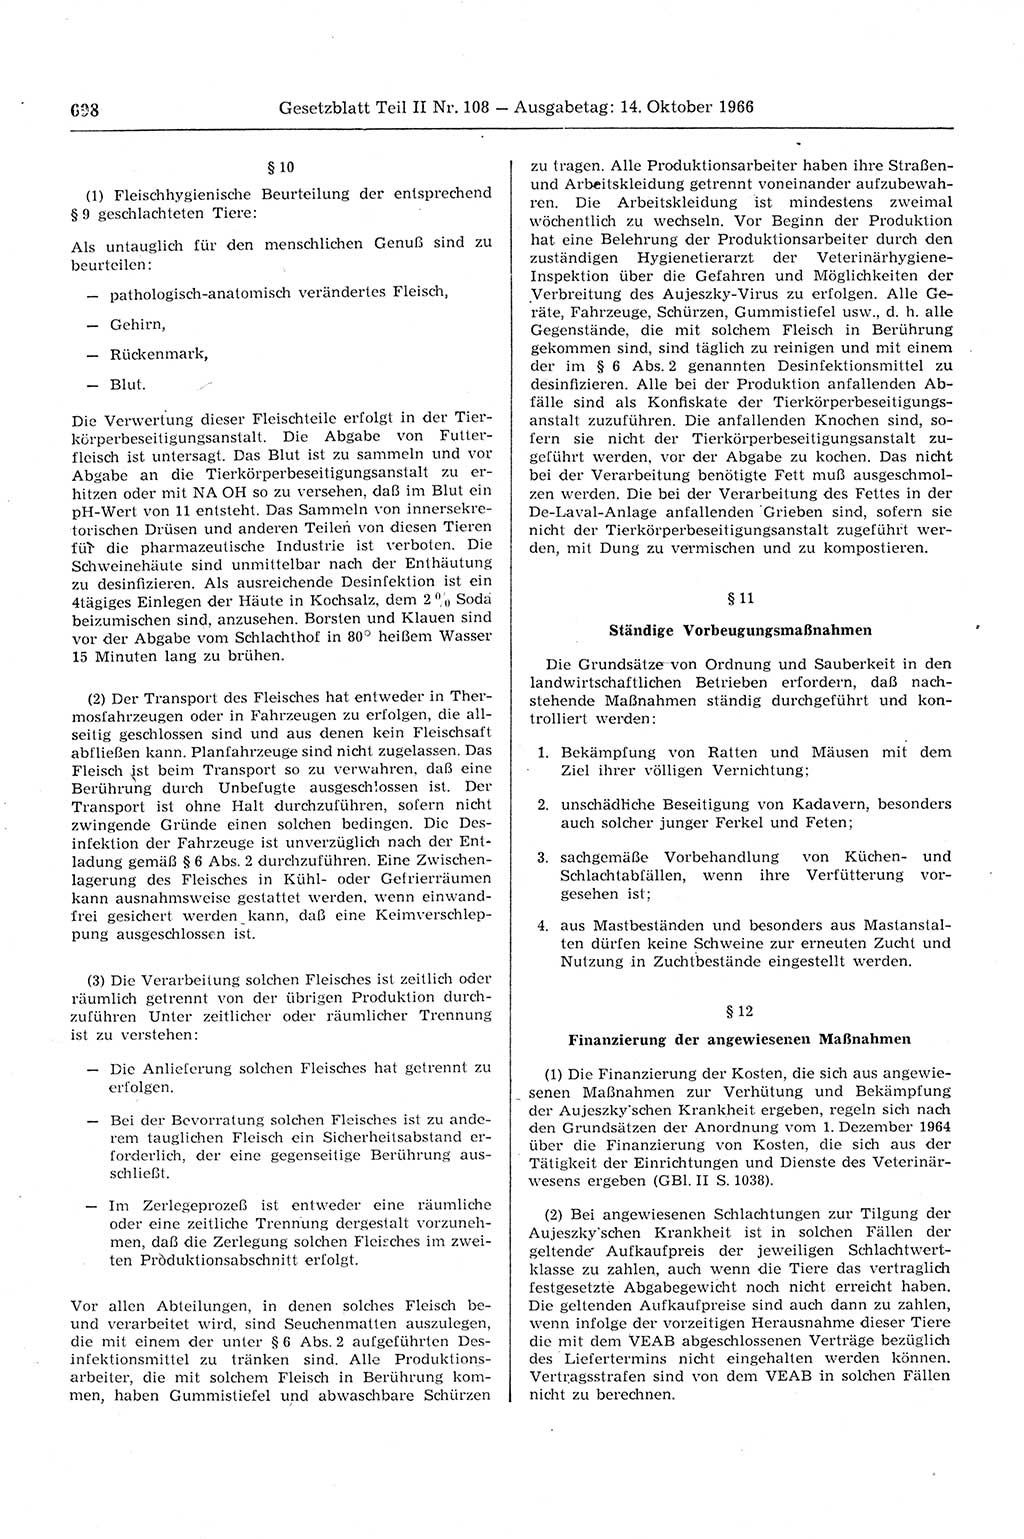 Gesetzblatt (GBl.) der Deutschen Demokratischen Republik (DDR) Teil ⅠⅠ 1966, Seite 698 (GBl. DDR ⅠⅠ 1966, S. 698)